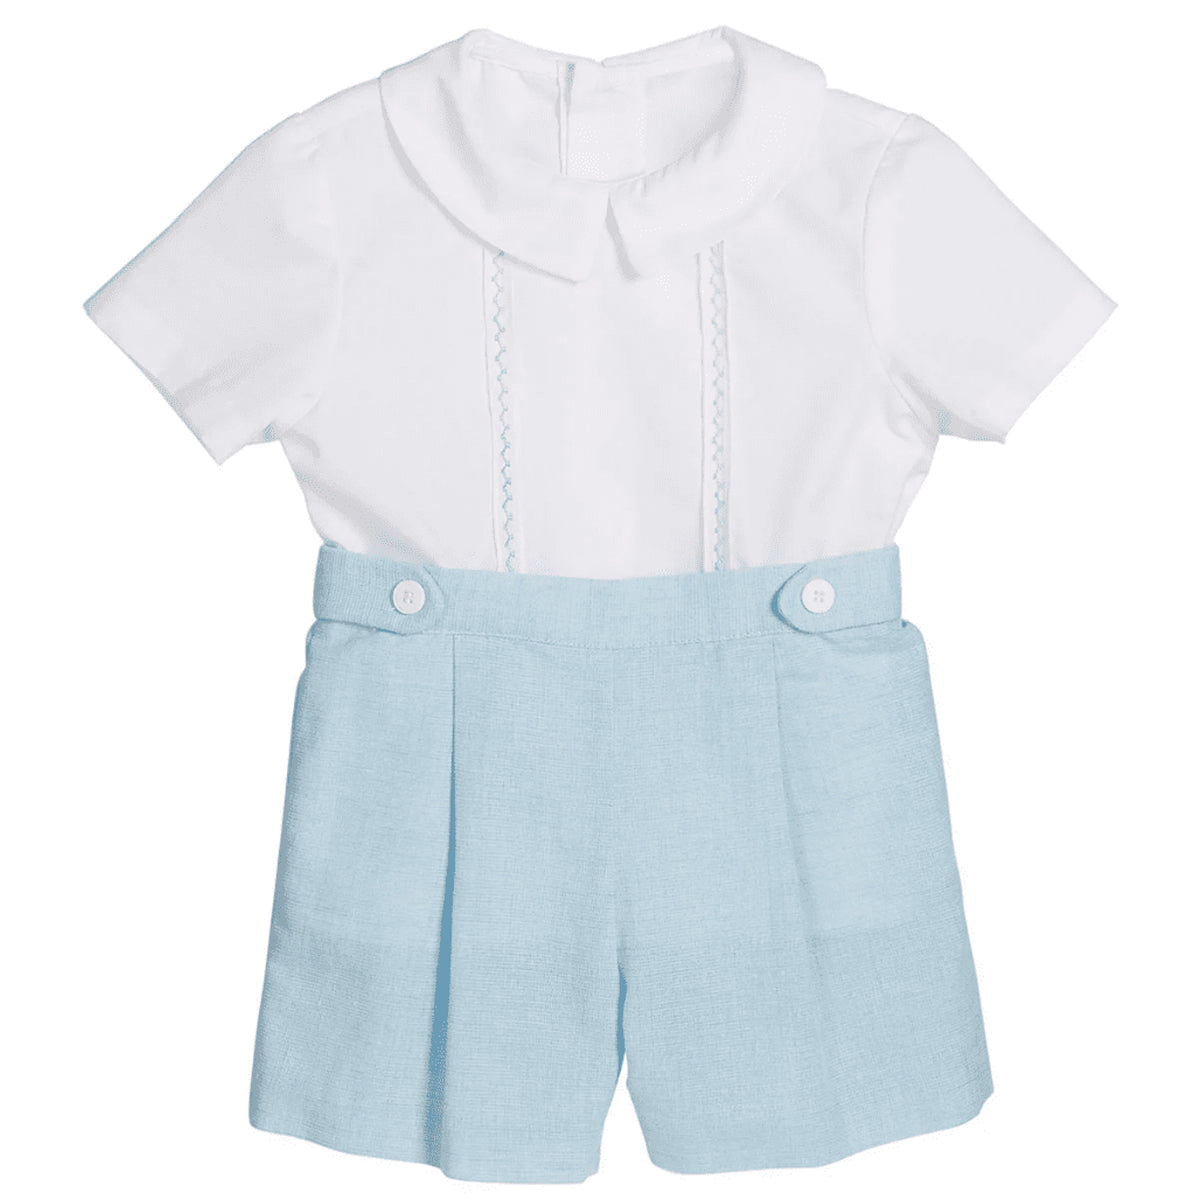 Blue & White Dressy Short Set